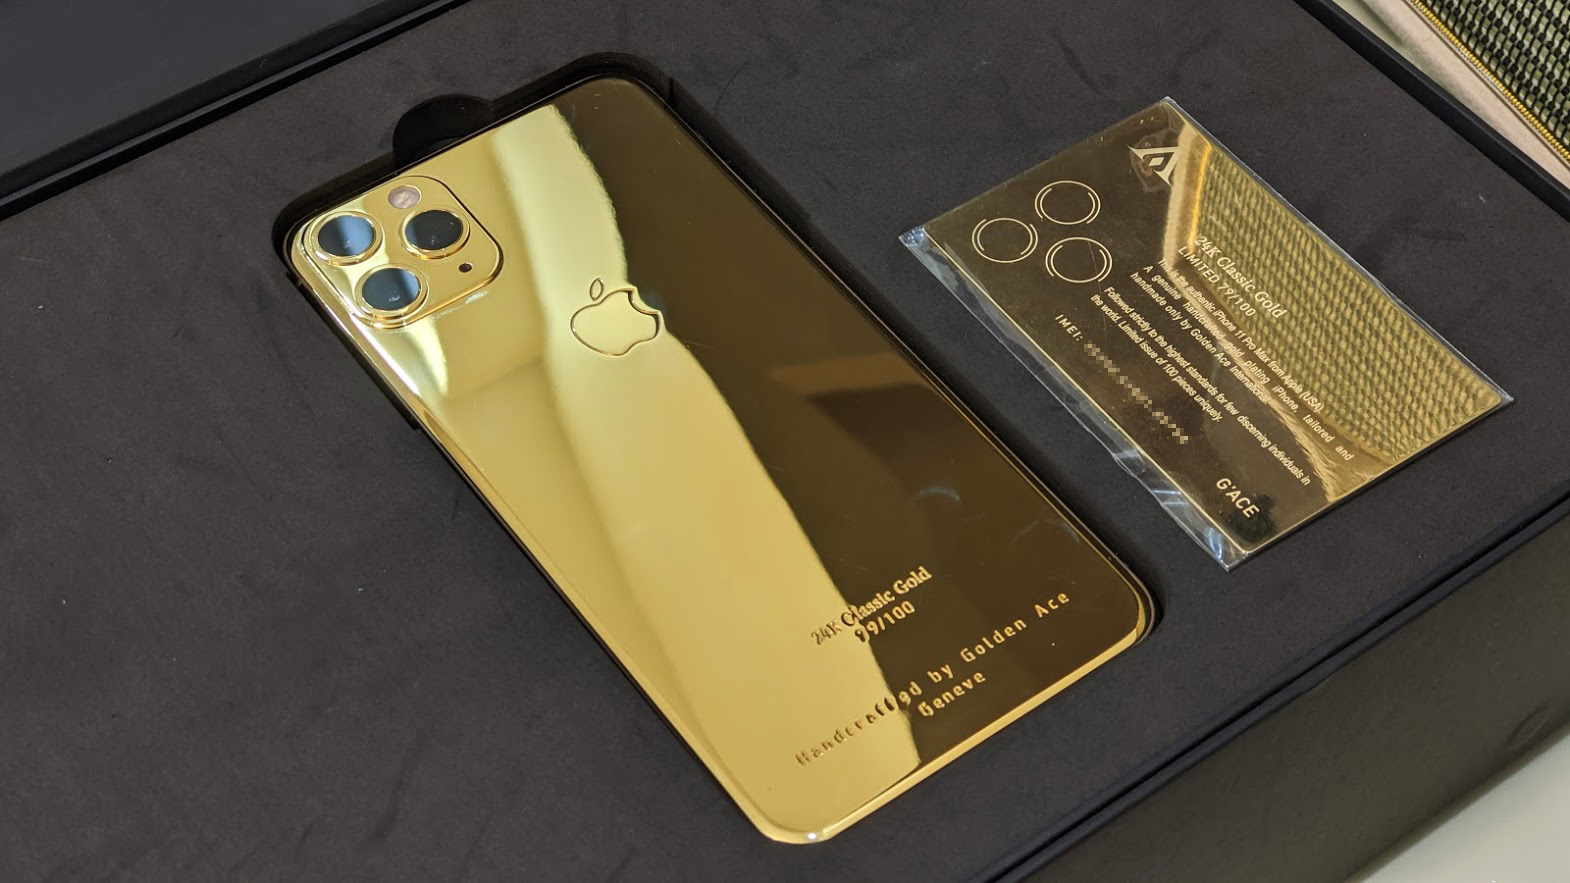 Với chiếc iPhone 11 Pro Max mạ vàng 24K, bạn không chỉ sở hữu một chiếc điện thoại thông minh hàng đầu, mà còn được trải nghiệm cảm giác sang trọng và đẳng cấp với lớp mạ vàng 24K bóng loáng. Hãy xem hình ảnh và đắm chìm trong vẻ đẹp của chiếc điện thoại này.